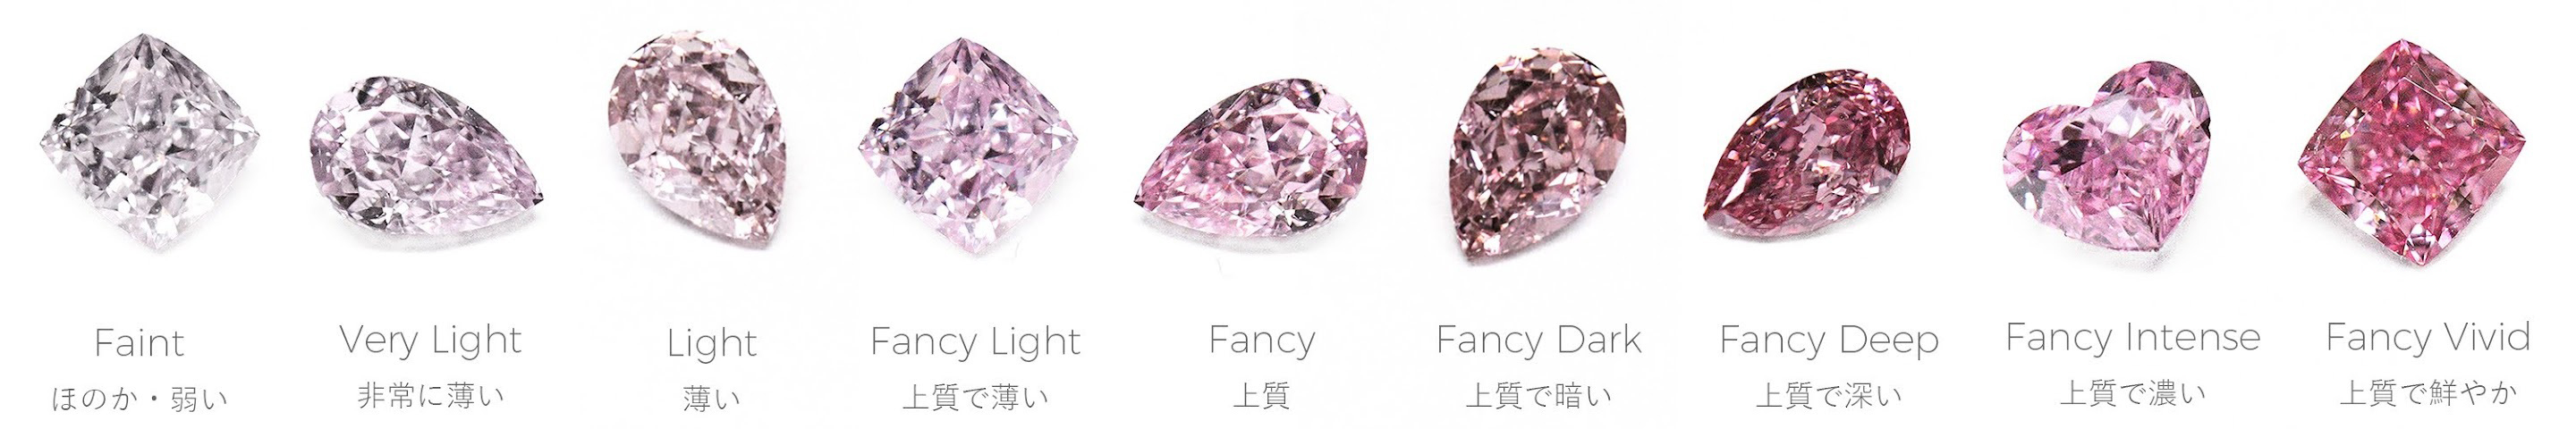 通常のダイヤモンドよりもさらに希少価値が高い「ピンクダイヤモンド